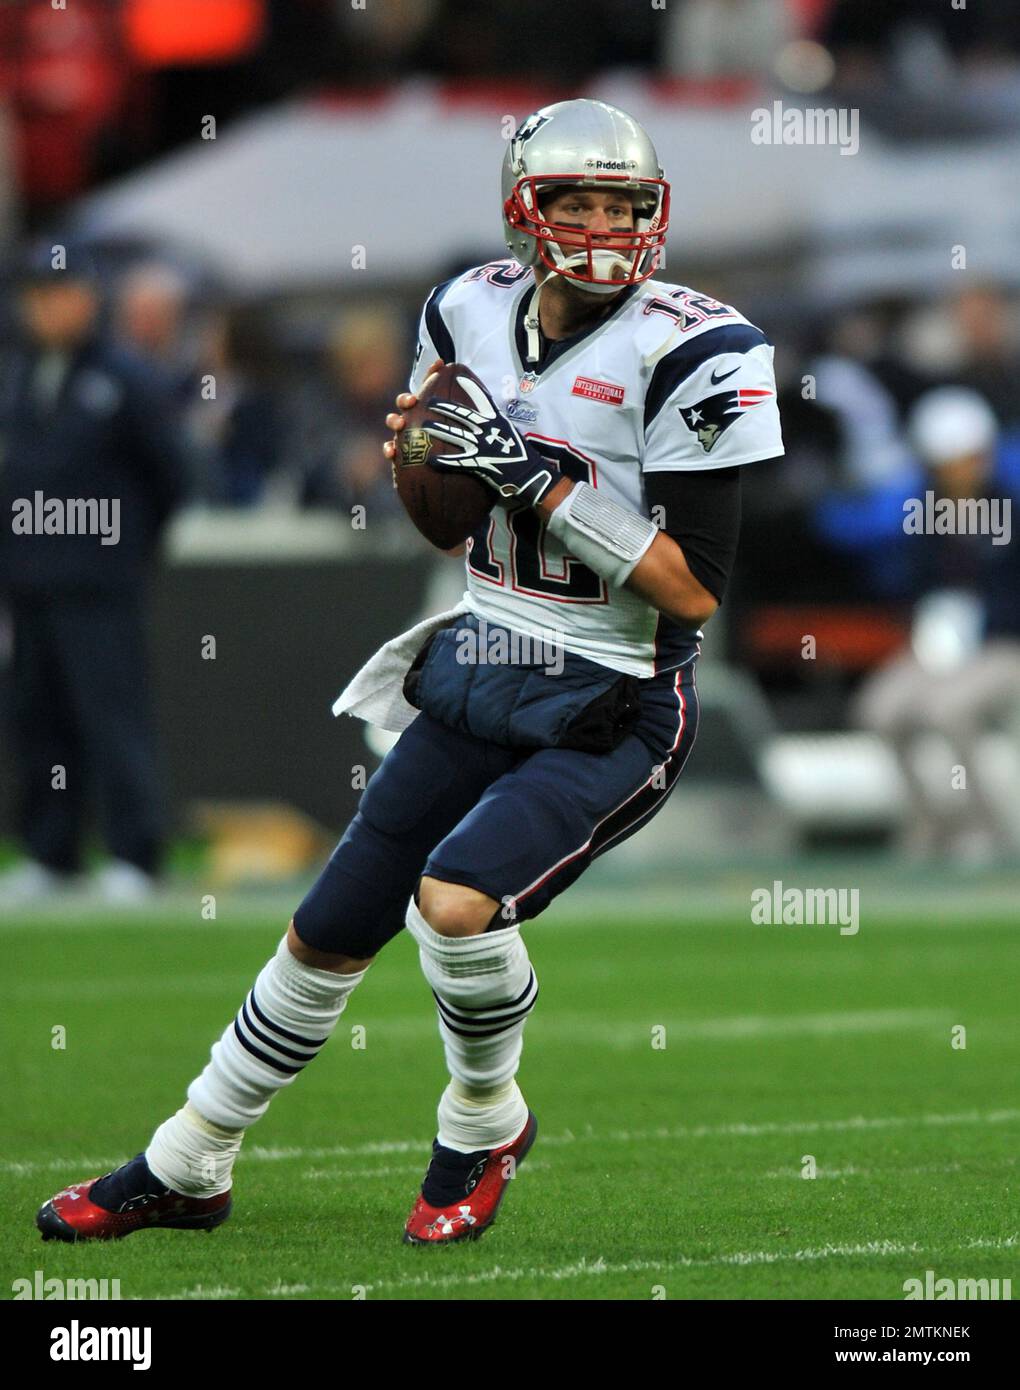 Aktenfoto von 28-10-2012 von Tom Brady, der seinen Ruhestand für immer angekündigt hat. Ausgabedatum: Mittwoch, 1. Februar 2023. Stockfoto